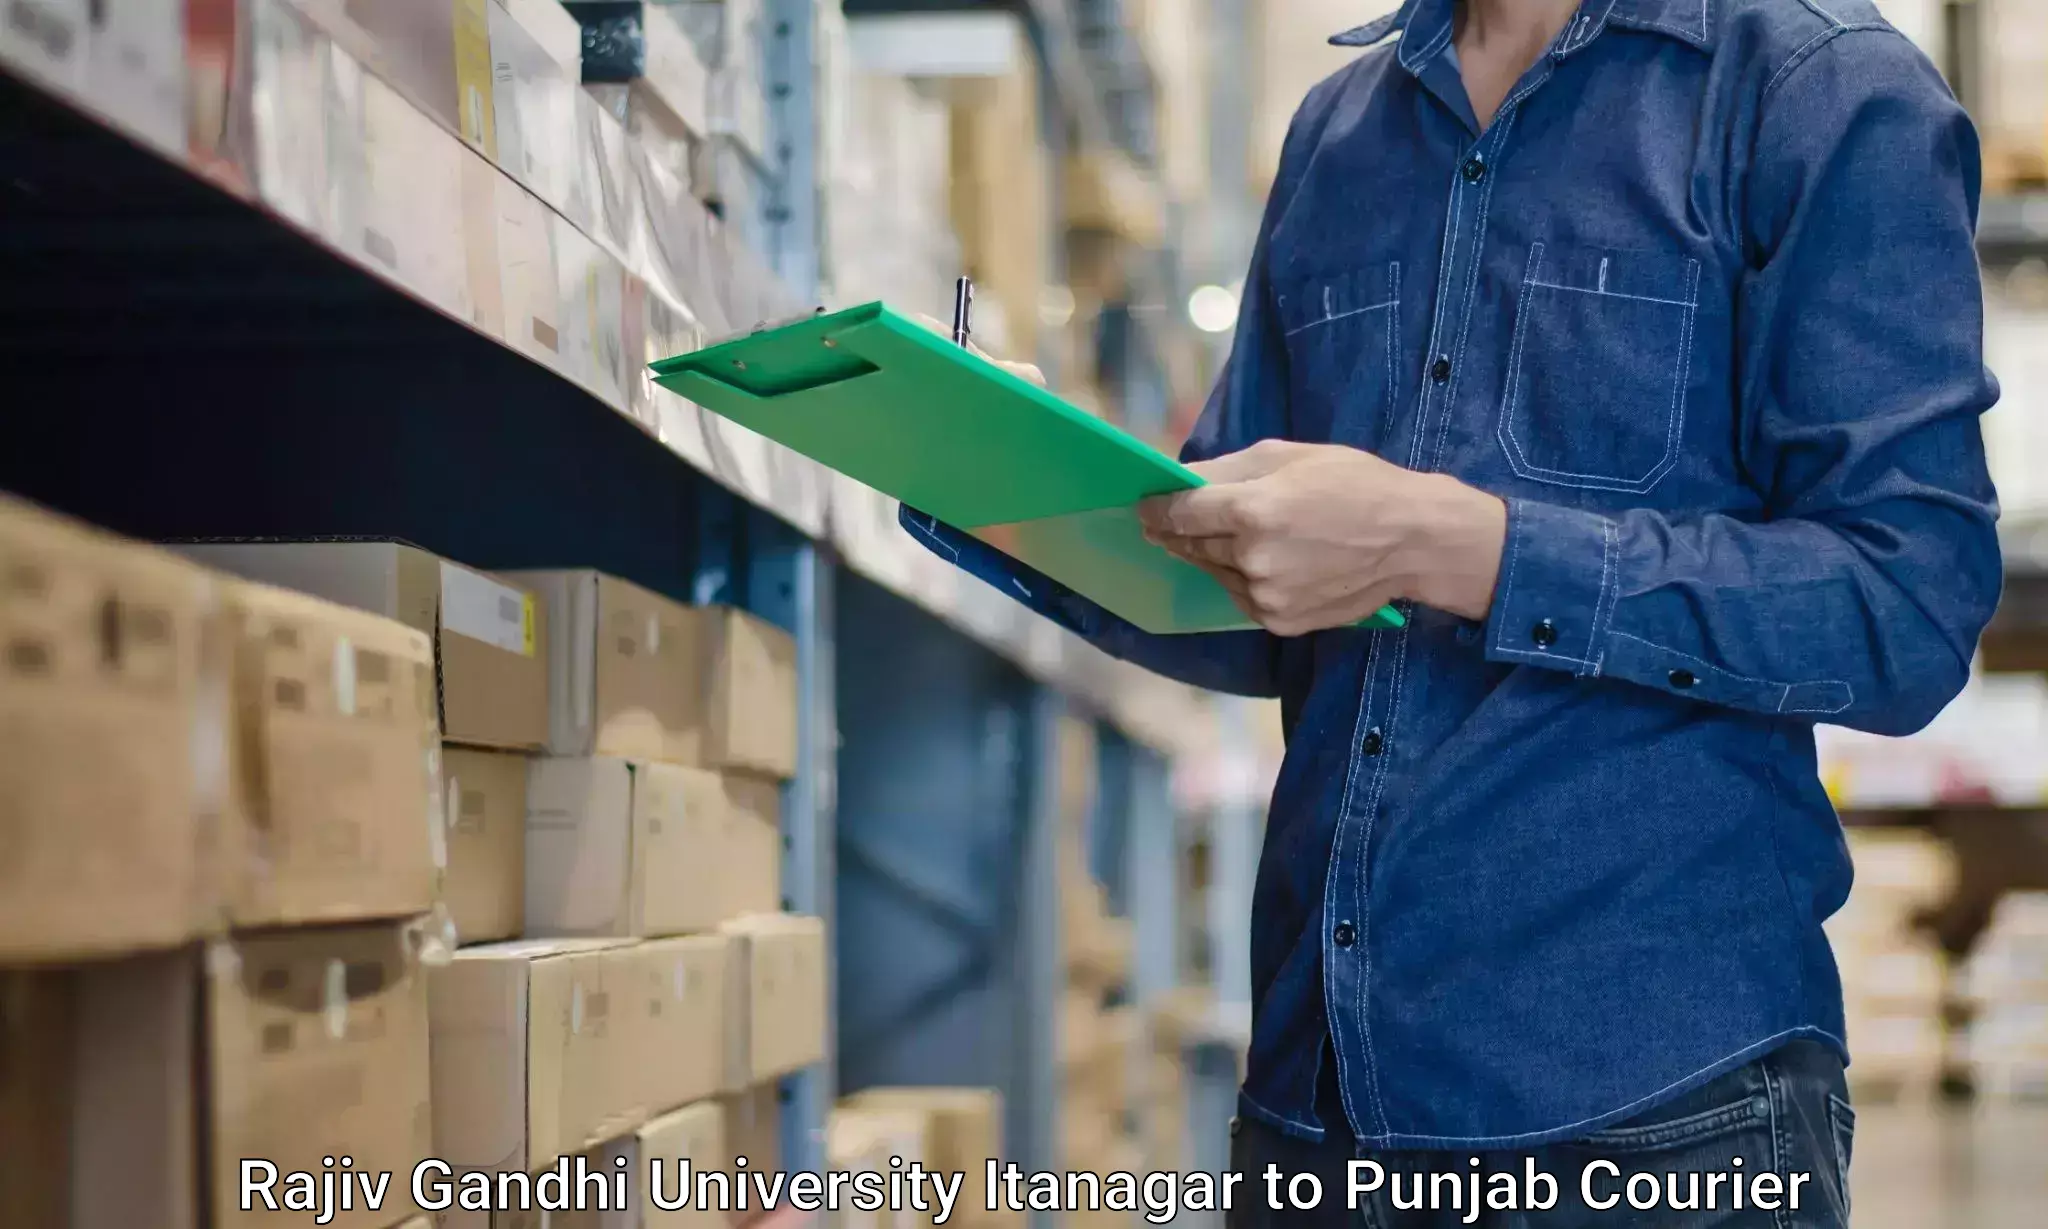 Furniture delivery service in Rajiv Gandhi University Itanagar to Mukerian